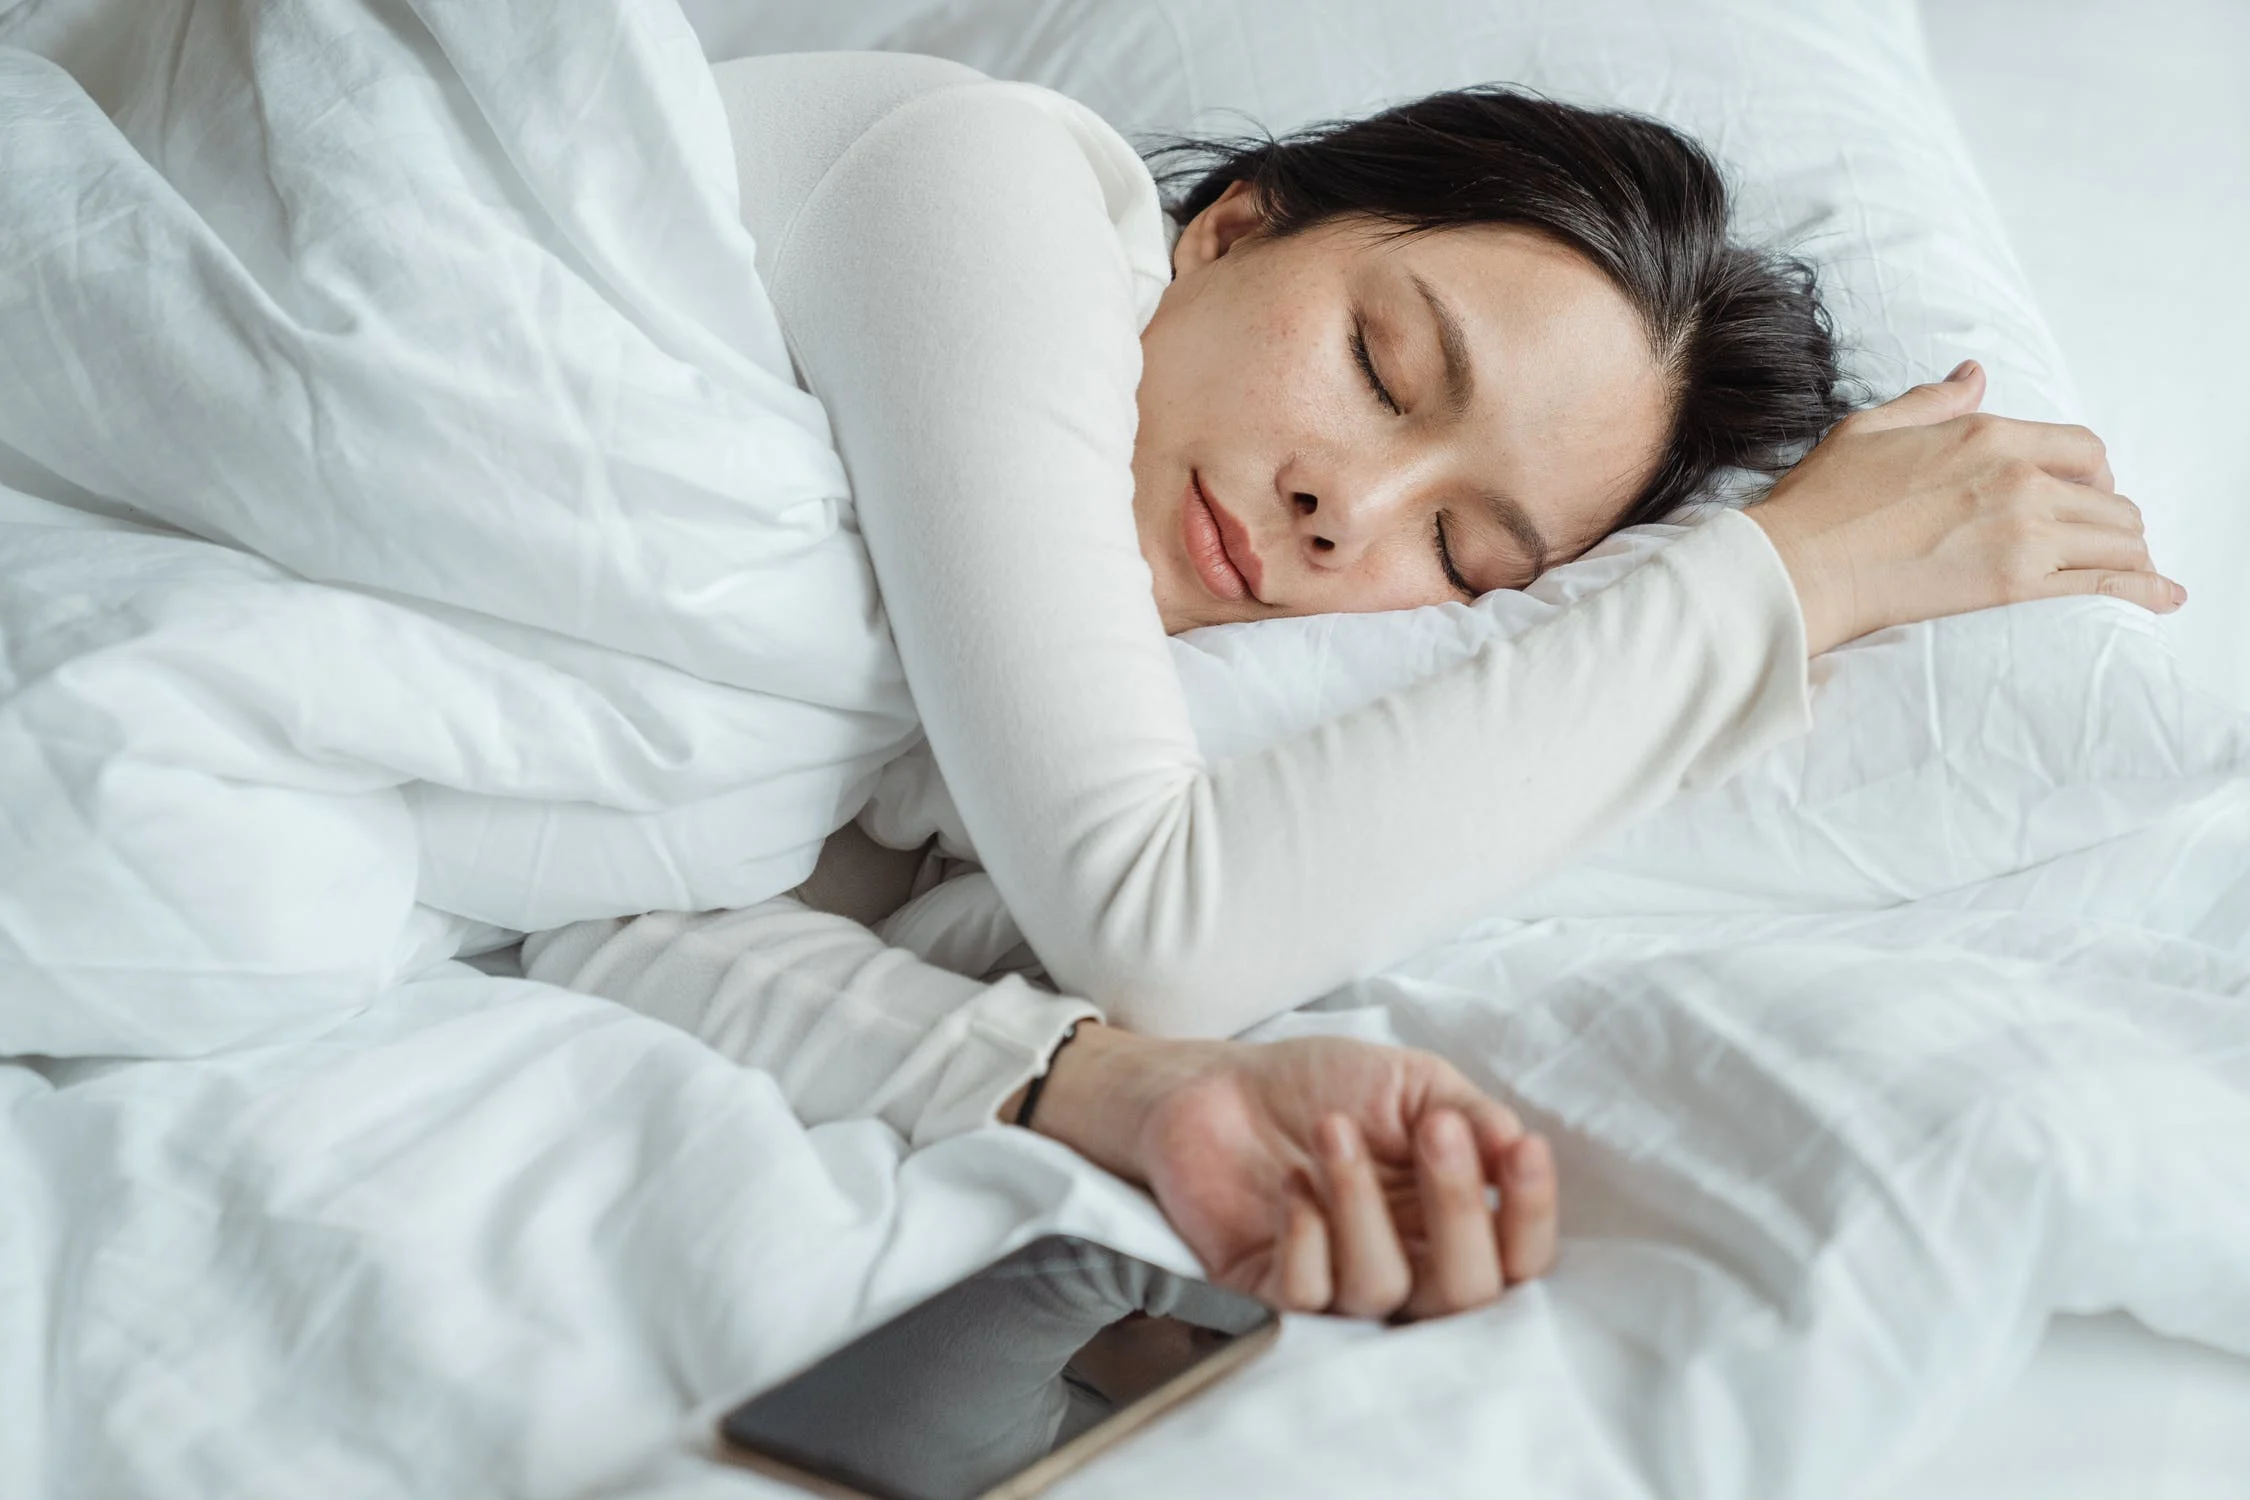 Myths About Sleep